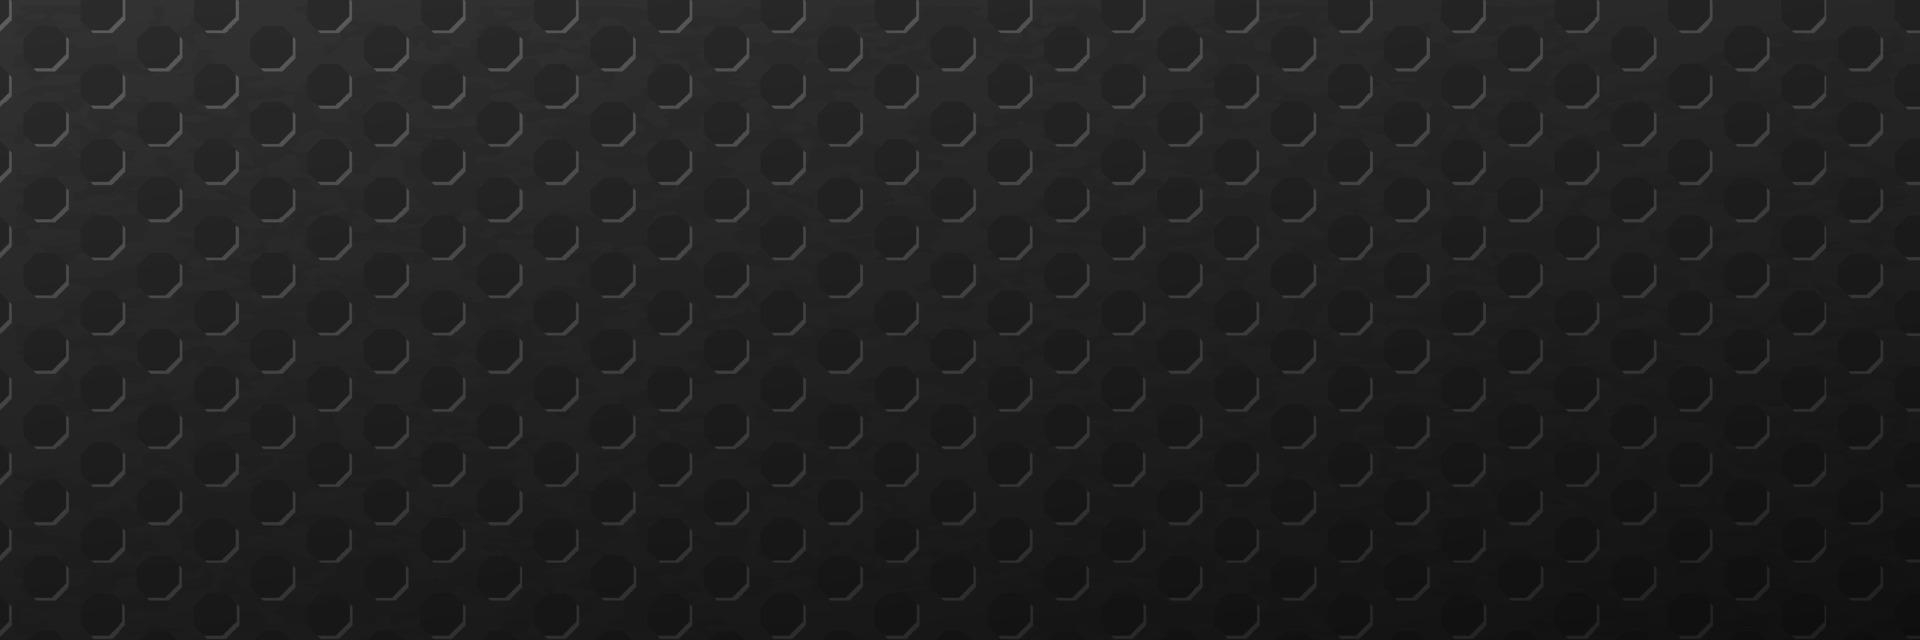 fundo escuro rendilhado hexagonal. grade poligonal geométrica de abstração texturizada em minimalismo linear de vetor monocromático brutal escuro